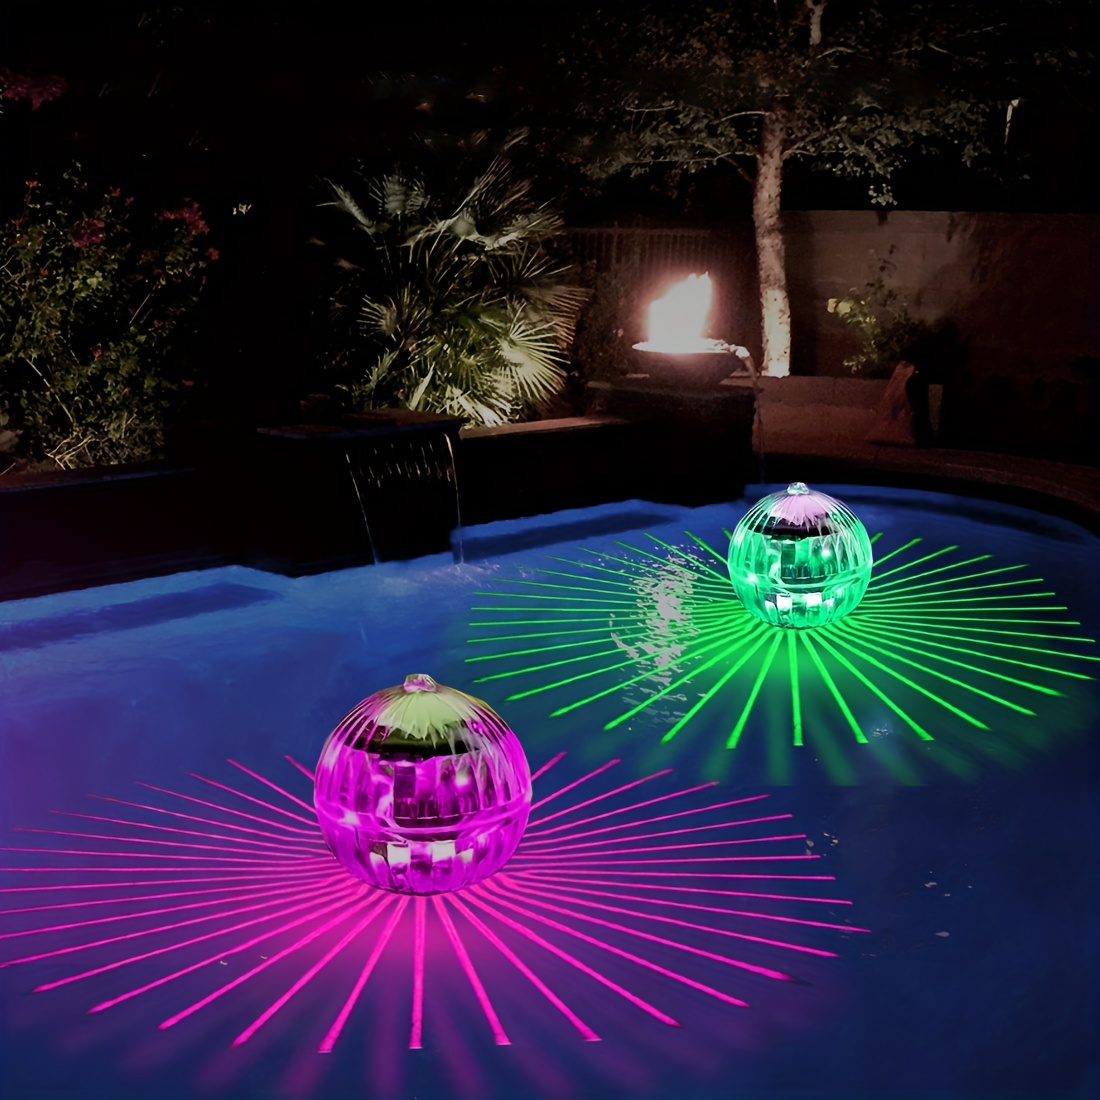 Lumières de piscine étanches, lumières de bain pour bébé pour la baignoire  (7 modes d'éclairage), jouets de bain à LED colorées pour piscine, étang,  bain à remous ou décorations de fête 